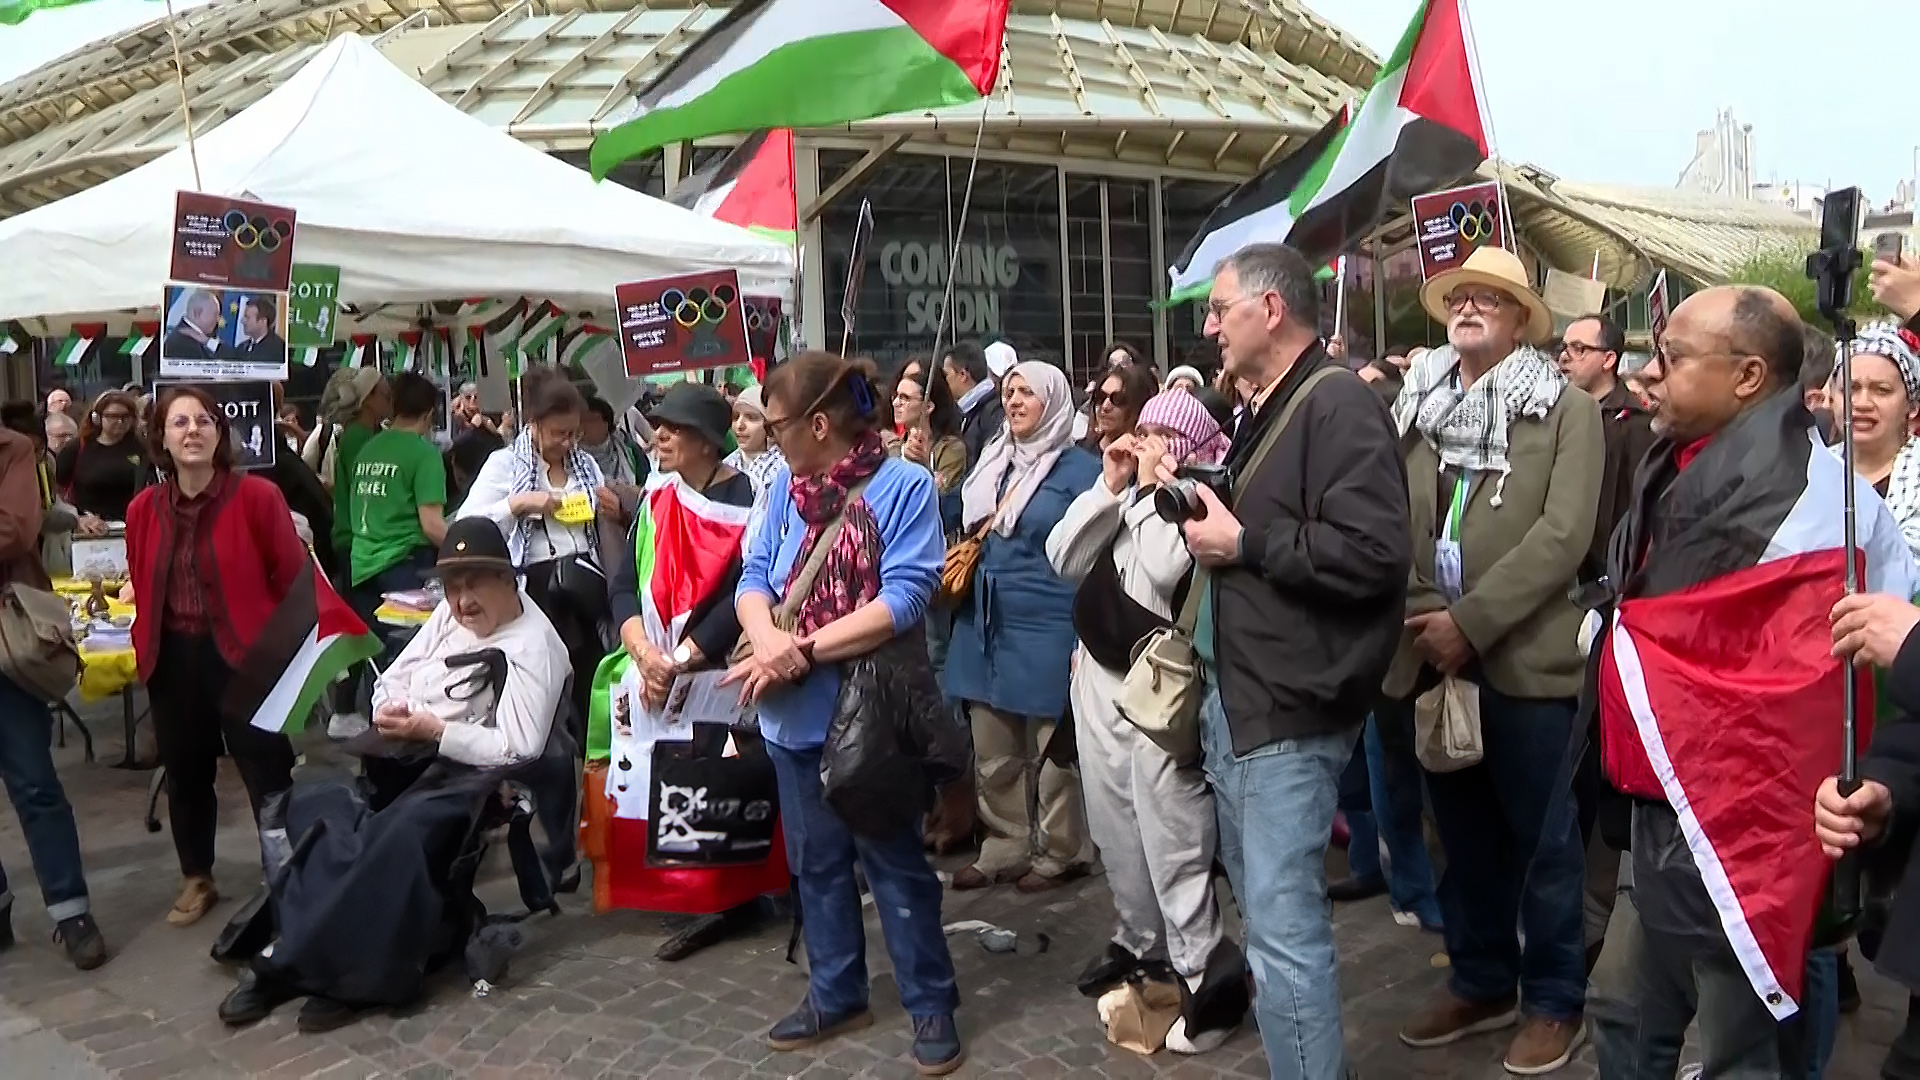 محتجون فرنسيون يطالبون بمعاقبة إسرائيل ومقاطعتها ومحاسبة مواطنيهم الذين يقاتلون معها | التقارير الإخبارية – البوكس نيوز